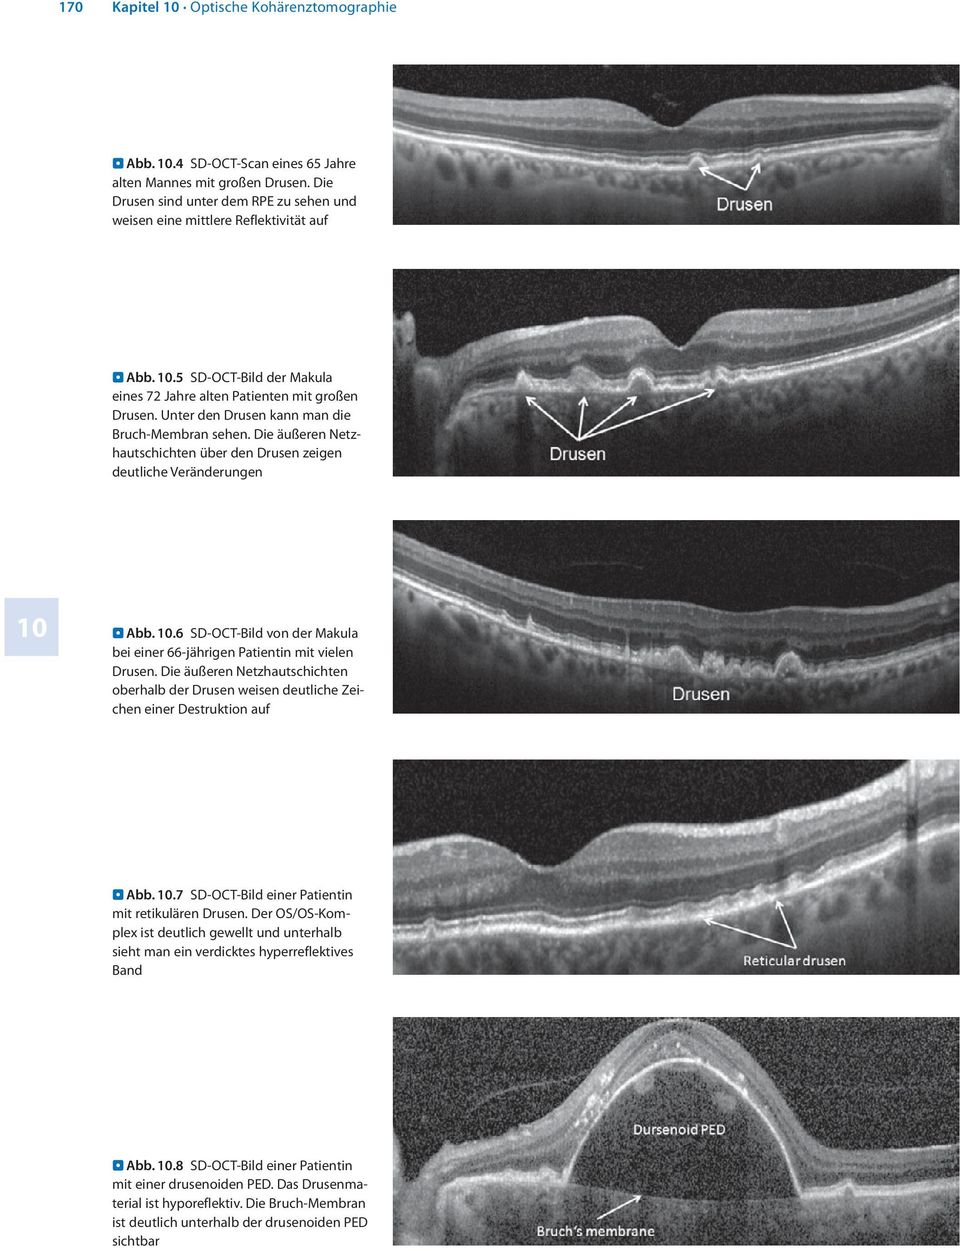 Die äußeren Netzhautschichten über den Drusen zeigen deutliche Veränderungen 10 Abb. 10.6 SD-OCT-Bild von der Makula bei einer 66-jährigen Patientin mit vielen Drusen.